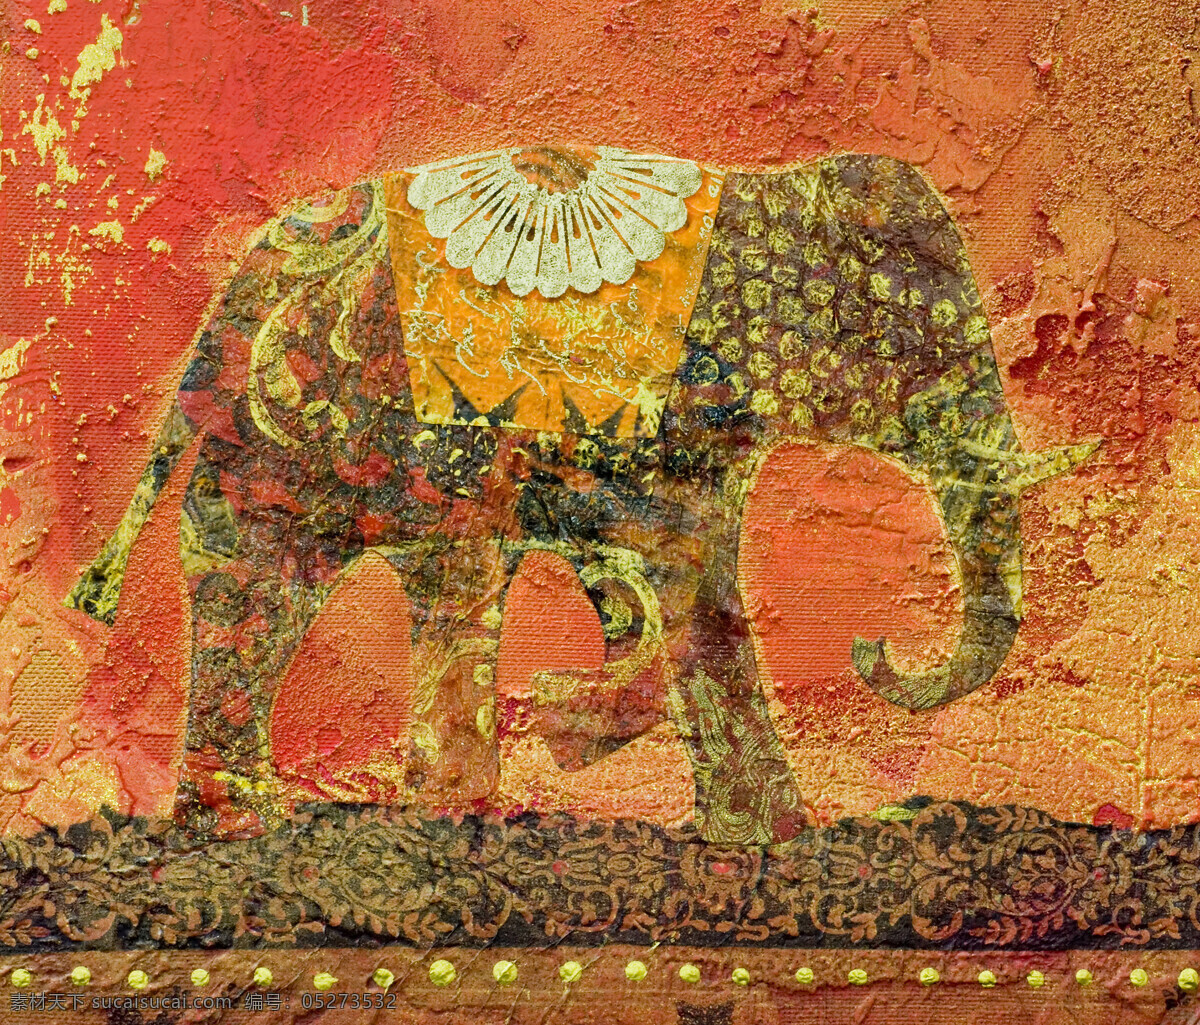 大象 壁画 大象插画 大象壁画 怀旧背景 复古背景 背景图案 复古花纹 书画文字 文化艺术